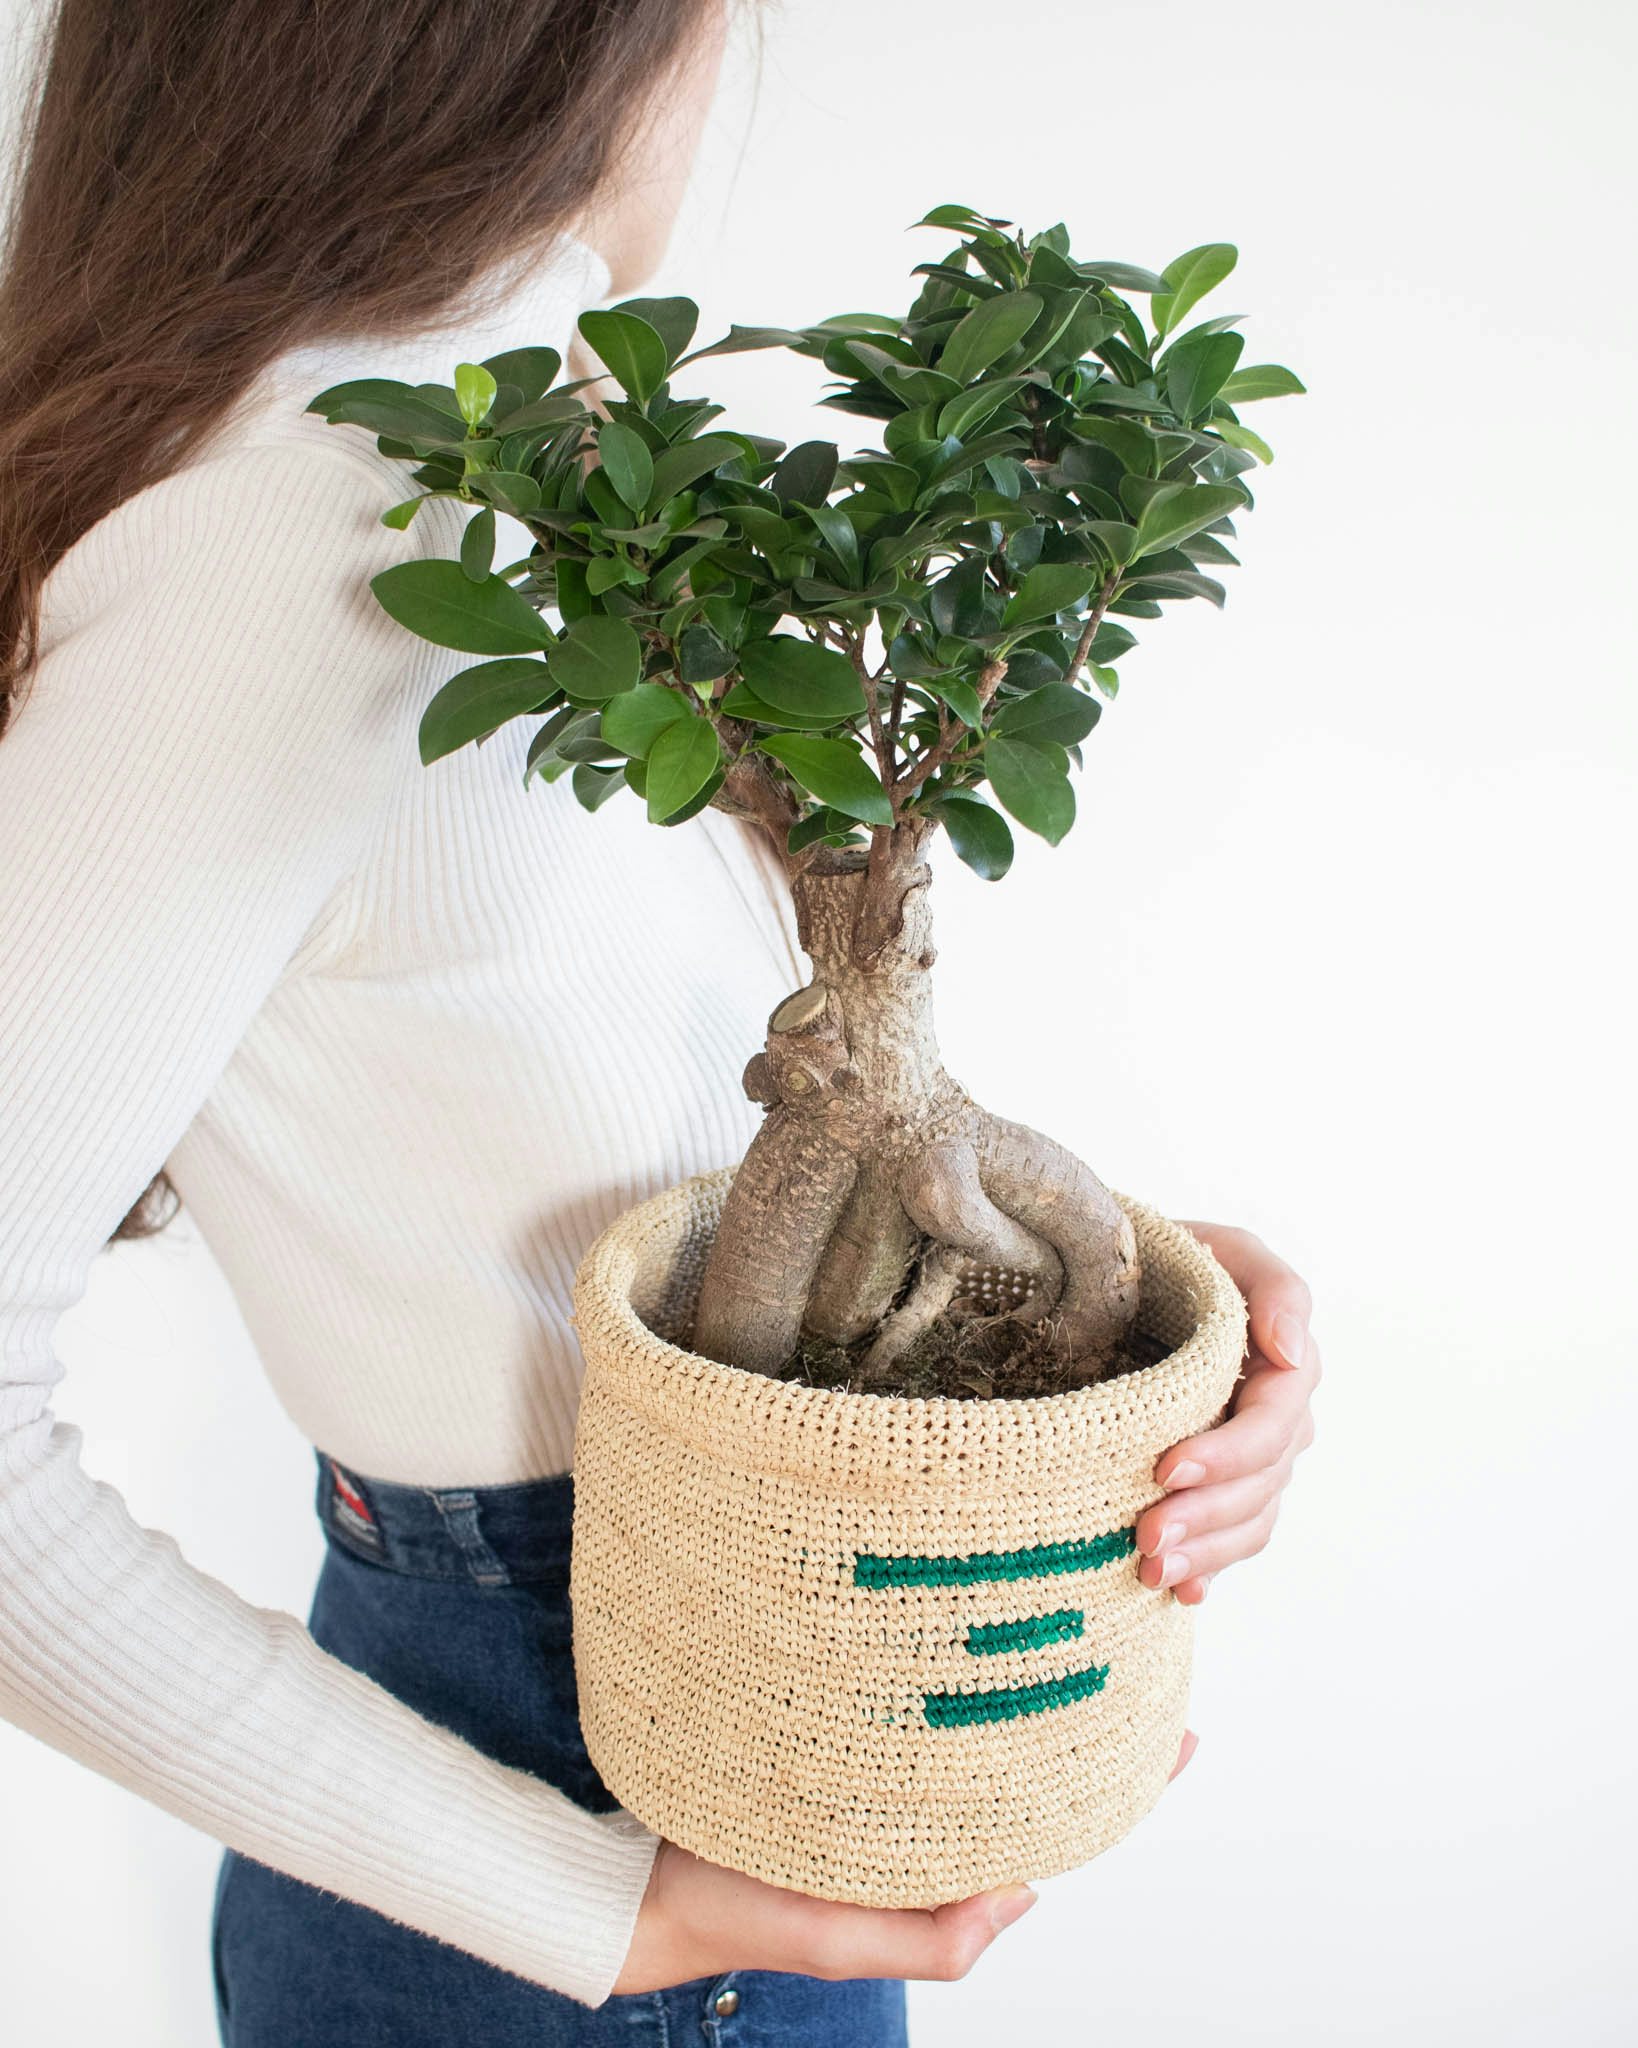 Ficus microcarpa (ou bonsaï), ficus ginseng : culture et entretien